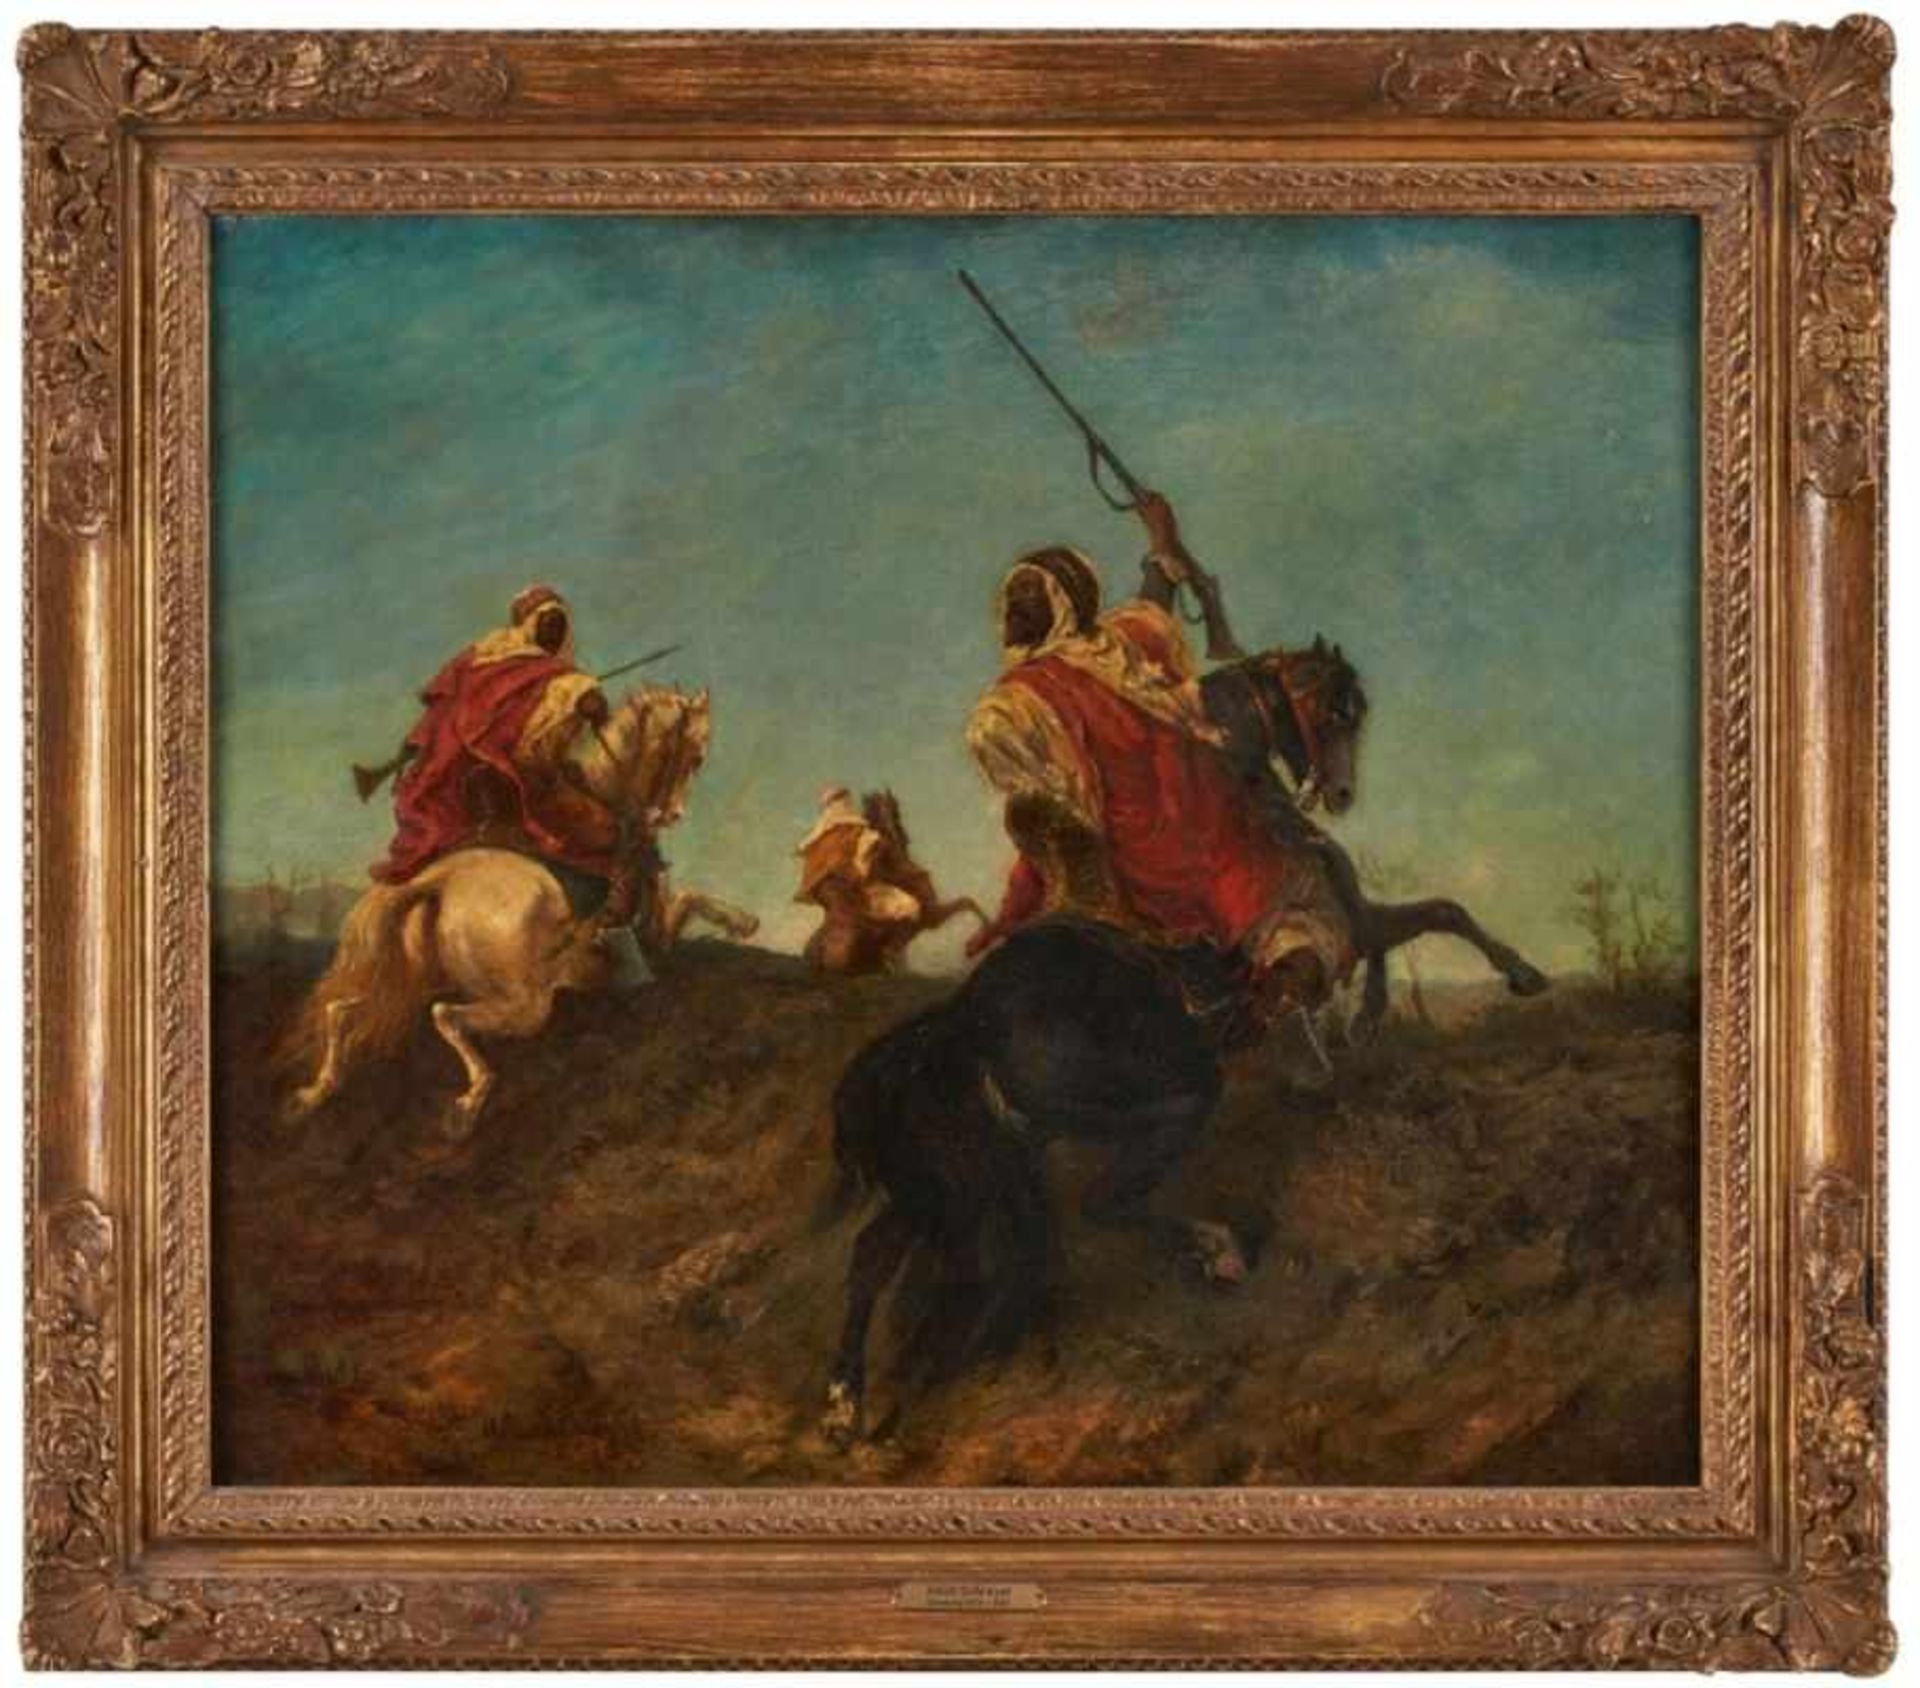 Gemälde Adolf Schreyer, in der Art des "Reitende Beduinen" u. li. sign. Ad. Schreyer Öl/Lwd. (